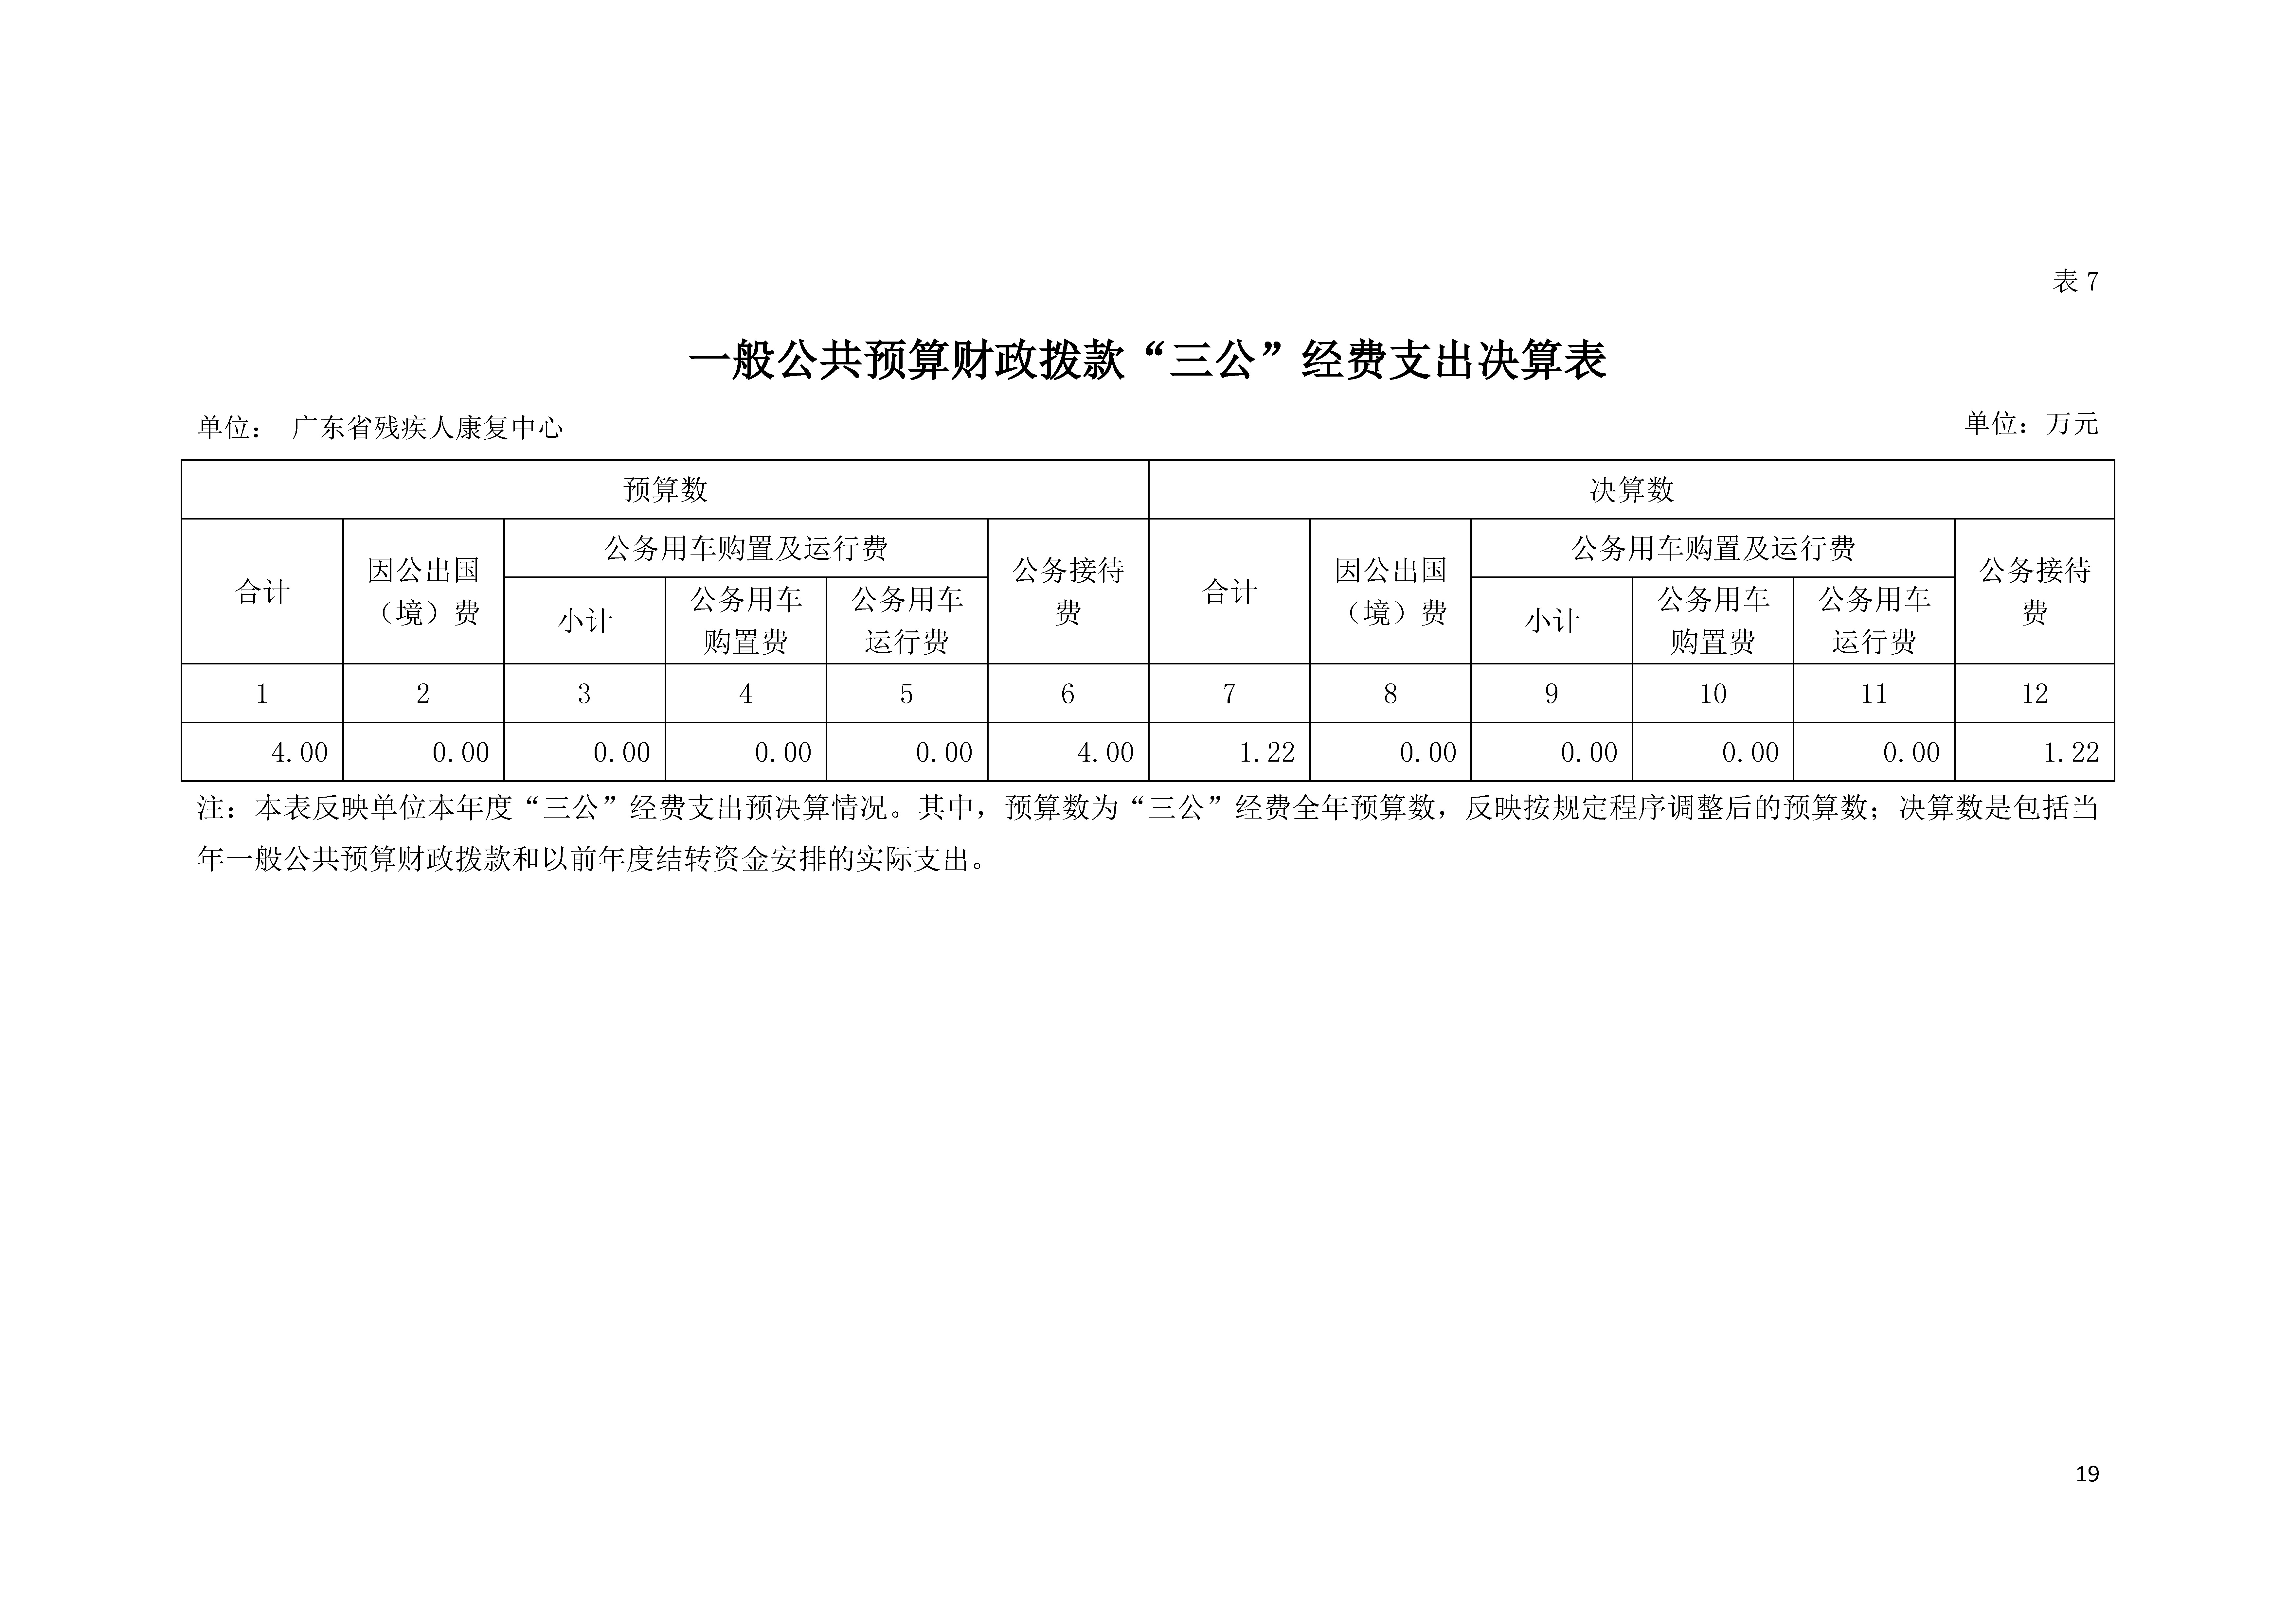 2020年广东省残疾人康复中心部门决算_页面_19.jpg